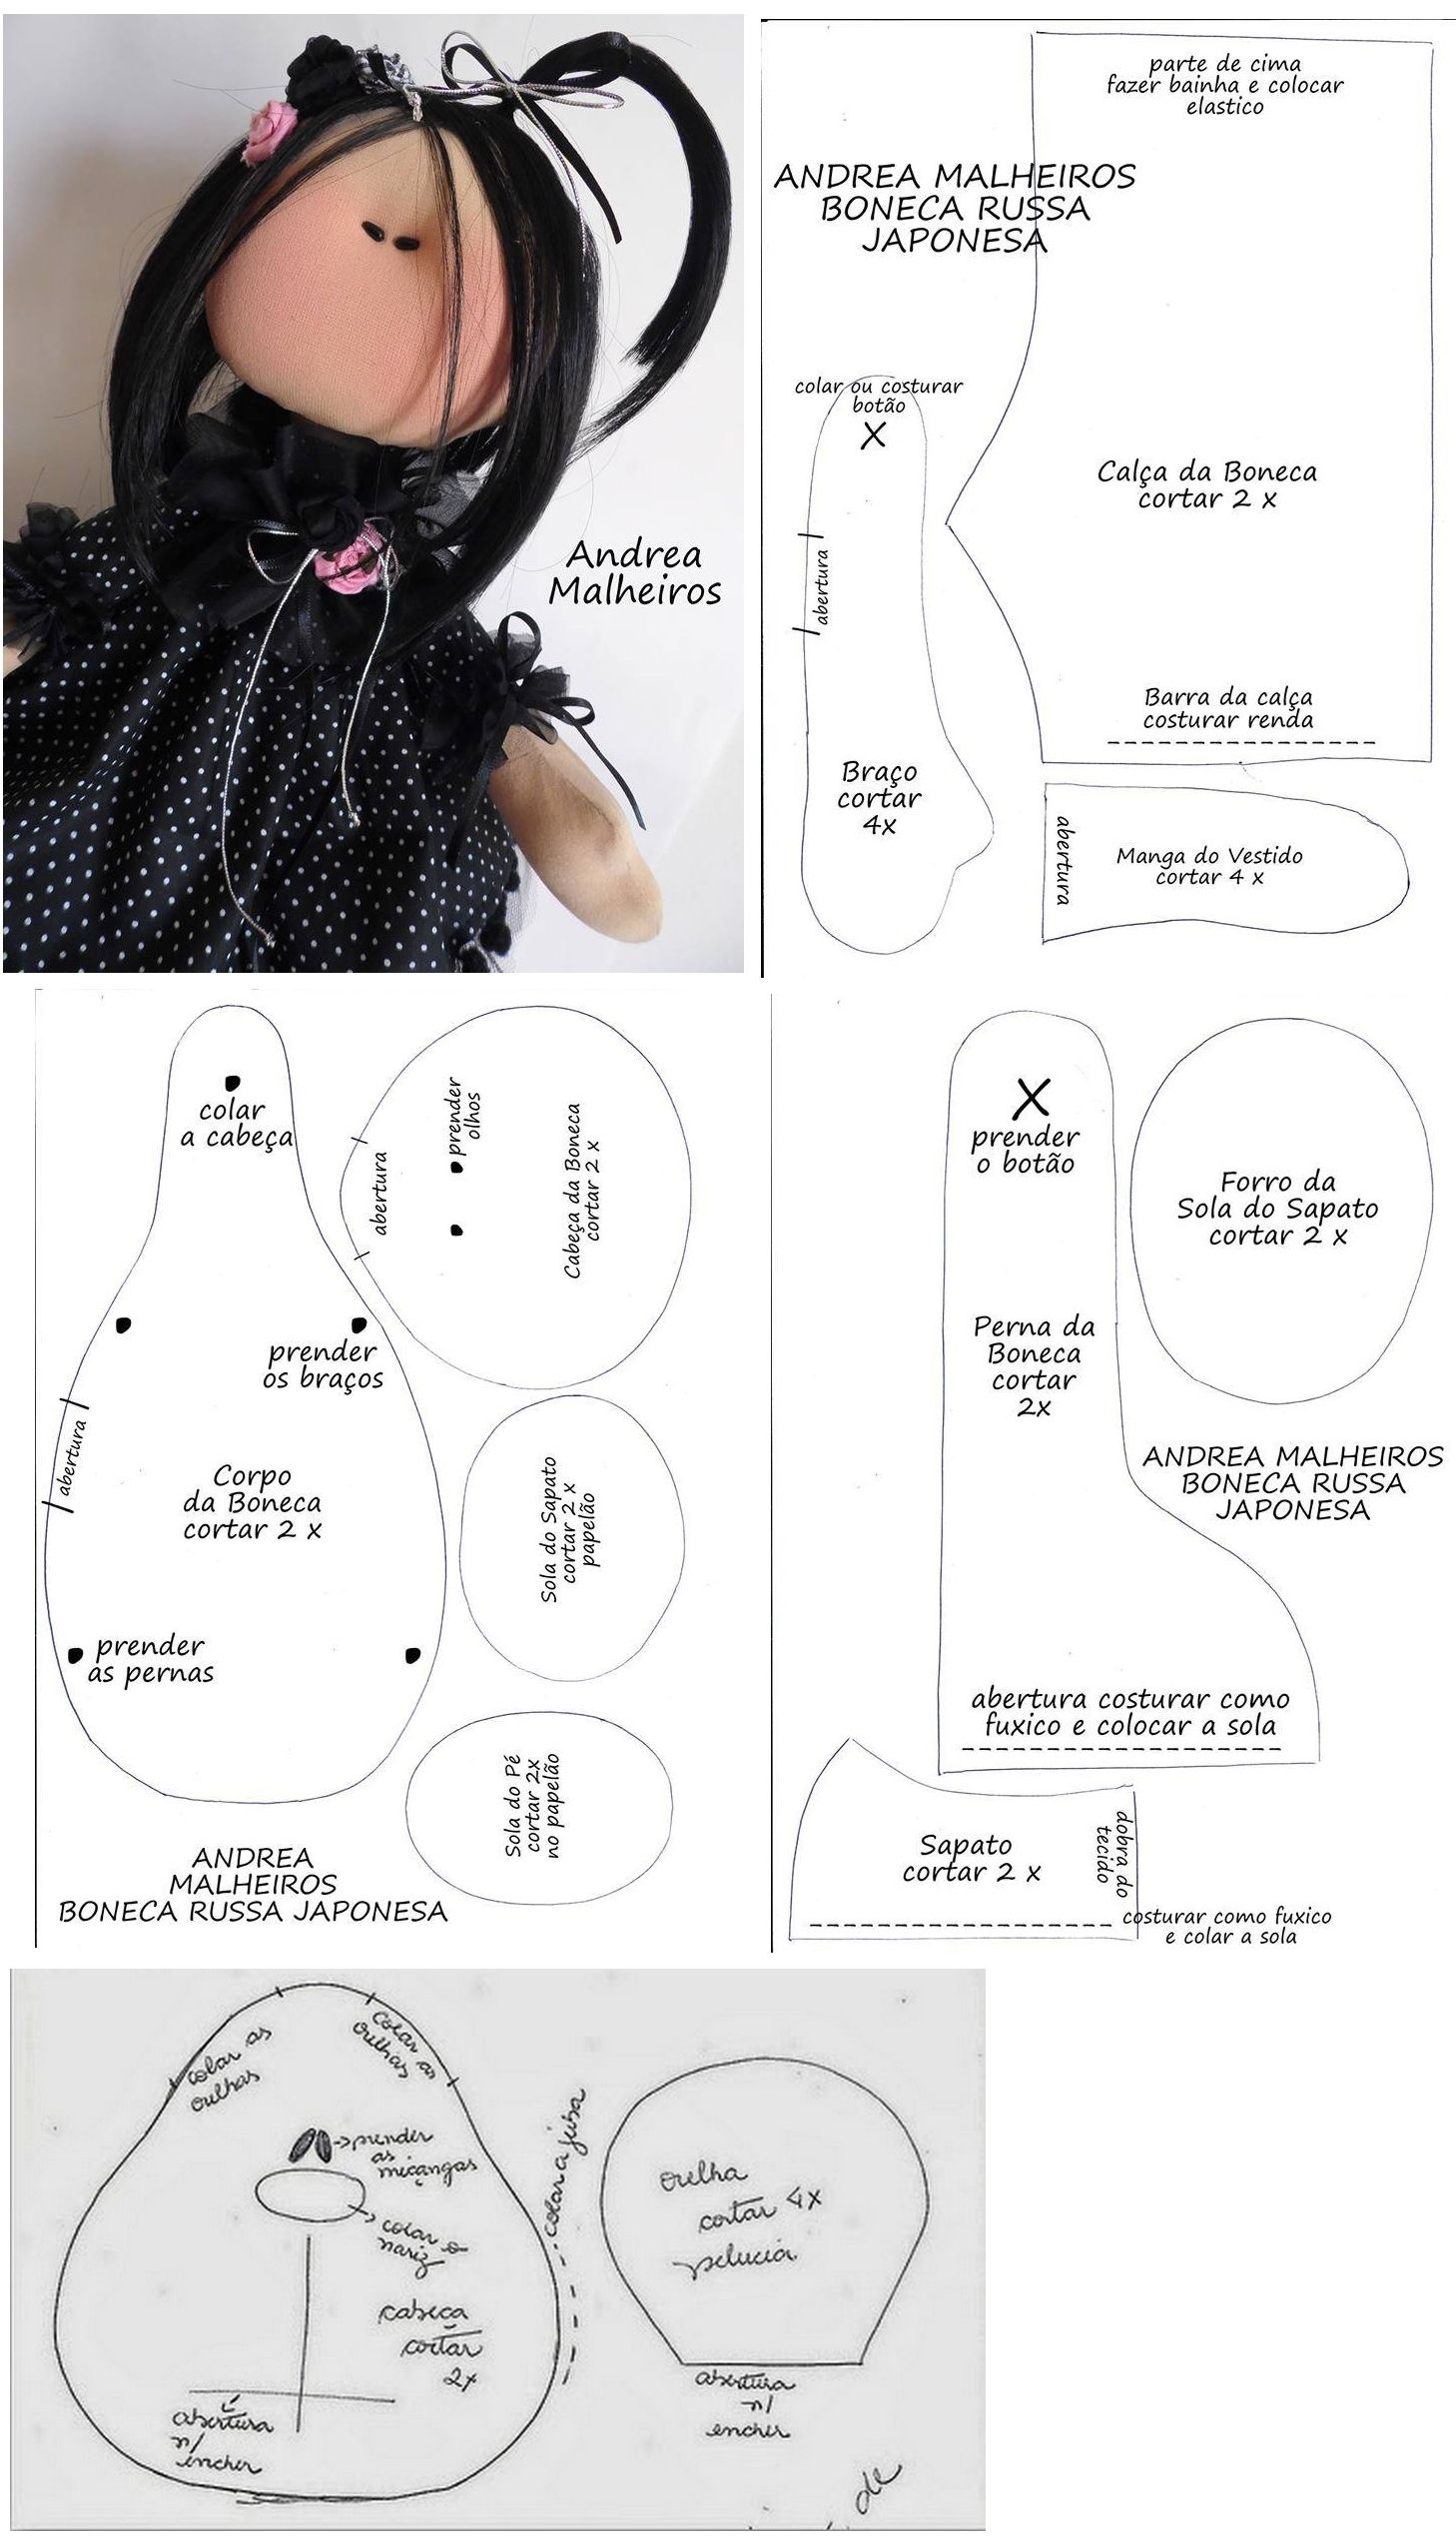 Куклы из трикотажа своими руками пошаговая инструкция фото: Мастер-класс смотреть онлайн: Текстильная кукла от макушки до пяточек